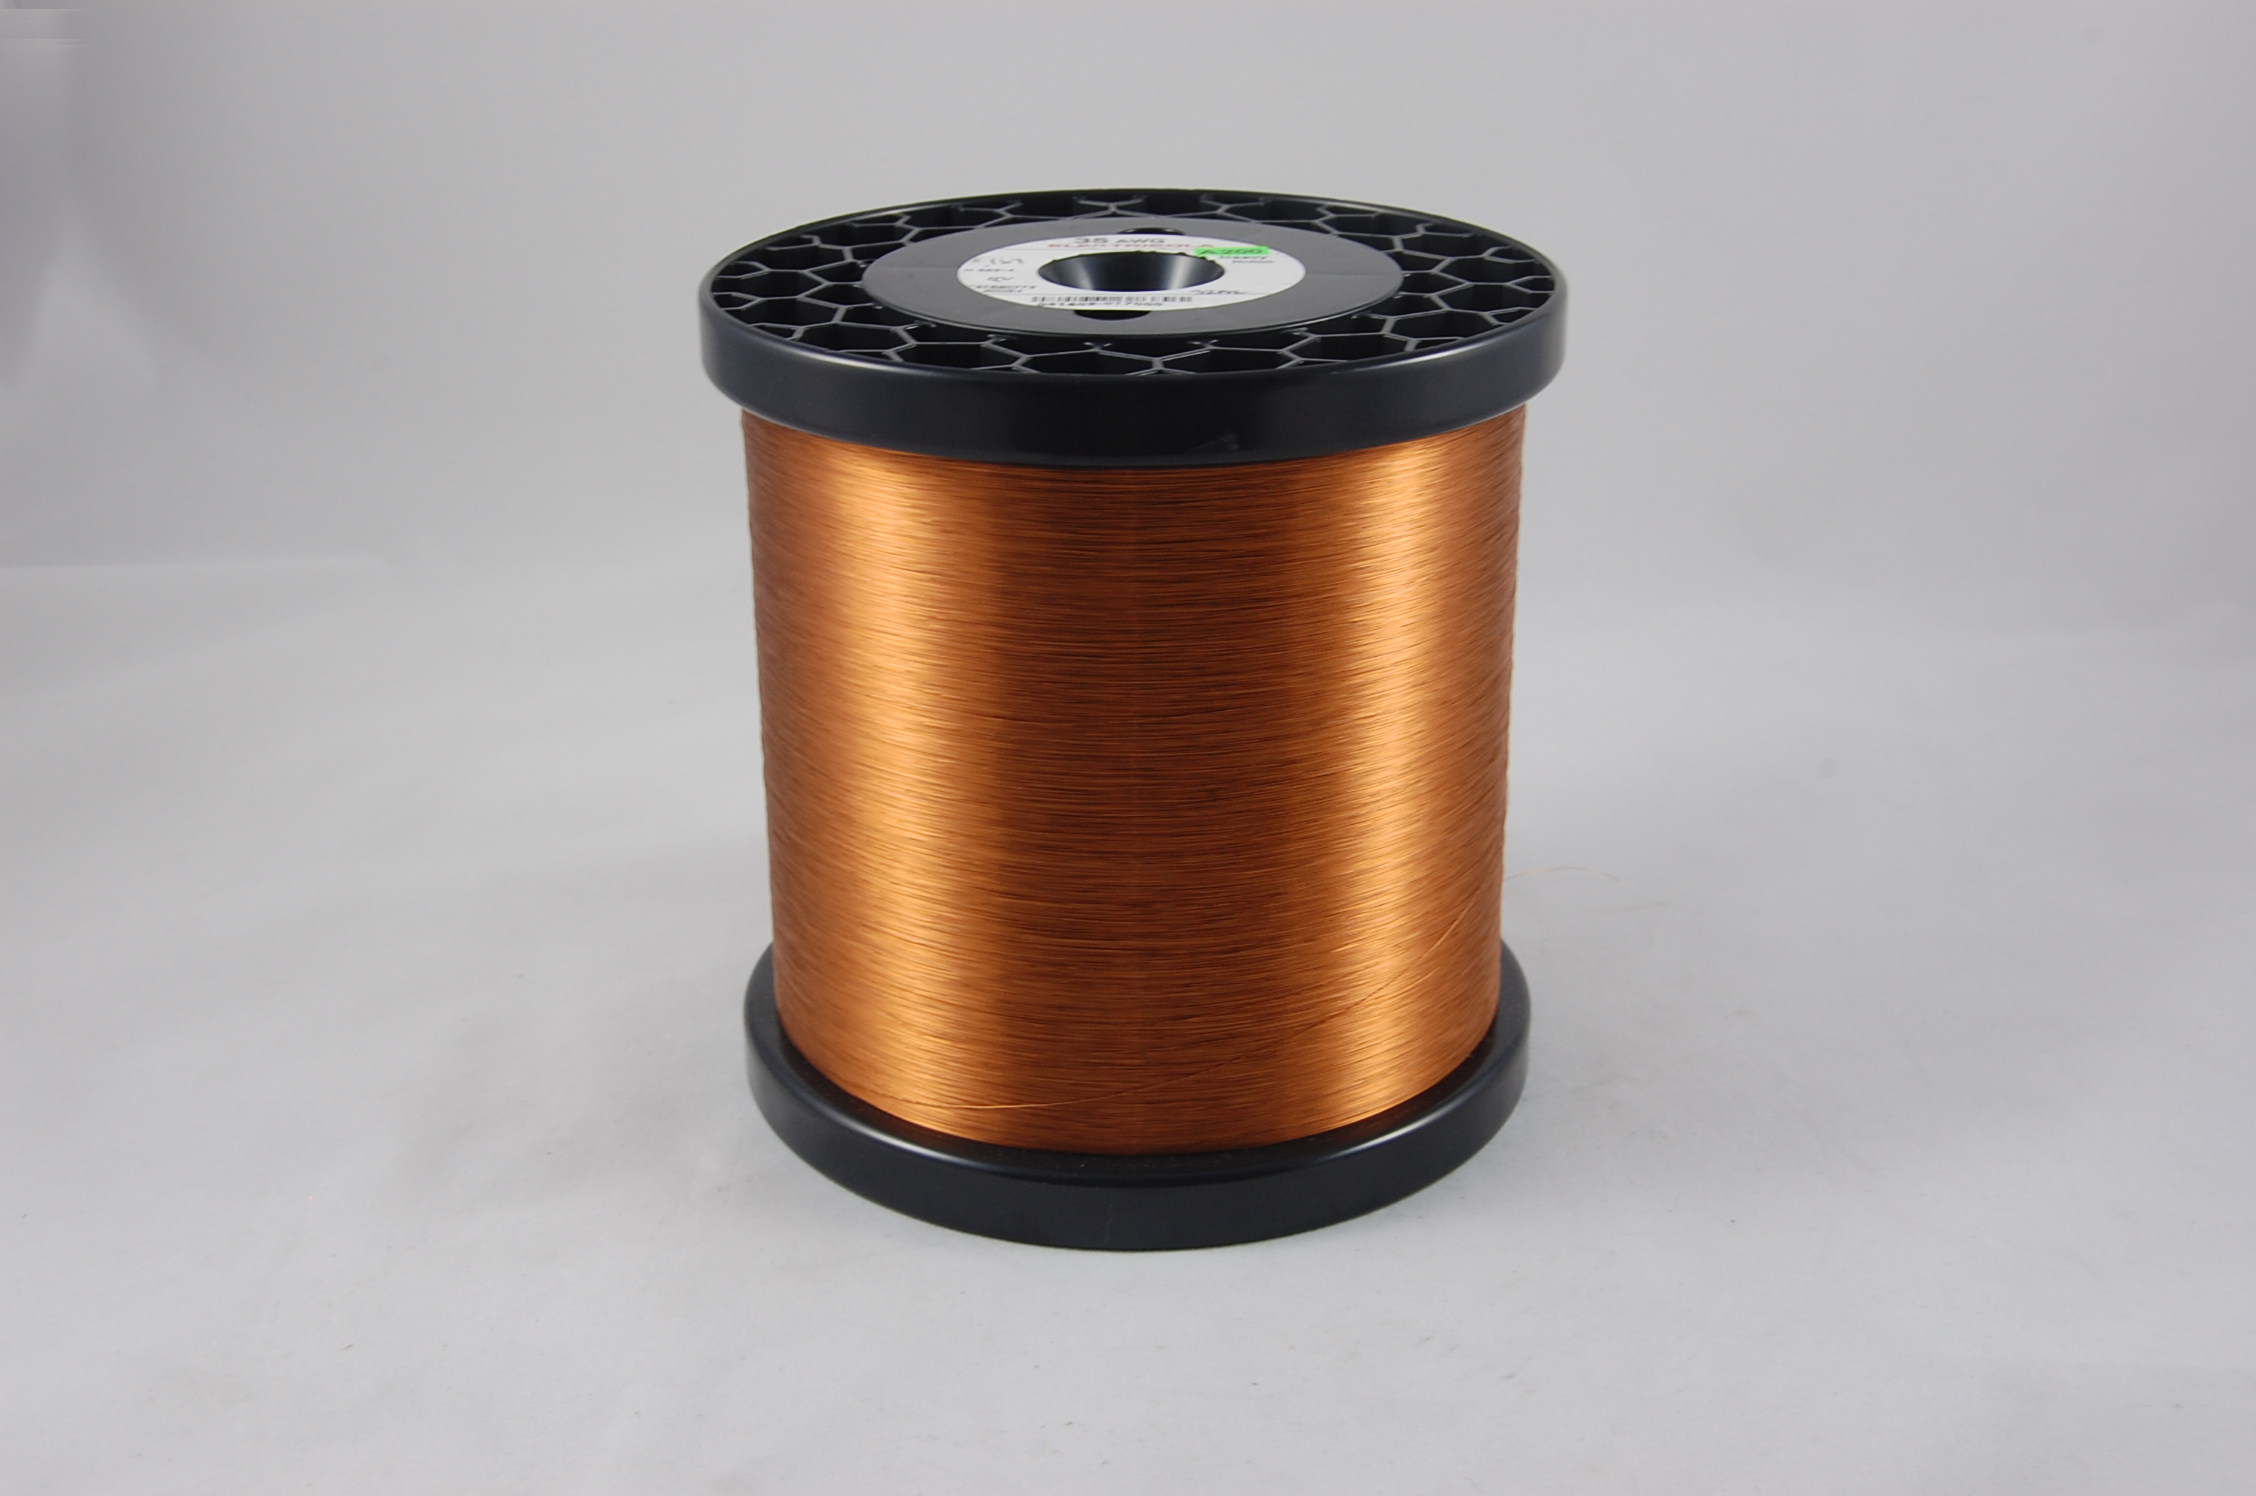 #45 Heavy Amidester 200 Round MW 74 Copper Magnet Wire 200°C, copper,  14 LB 6" x 6" spool (average wght.)